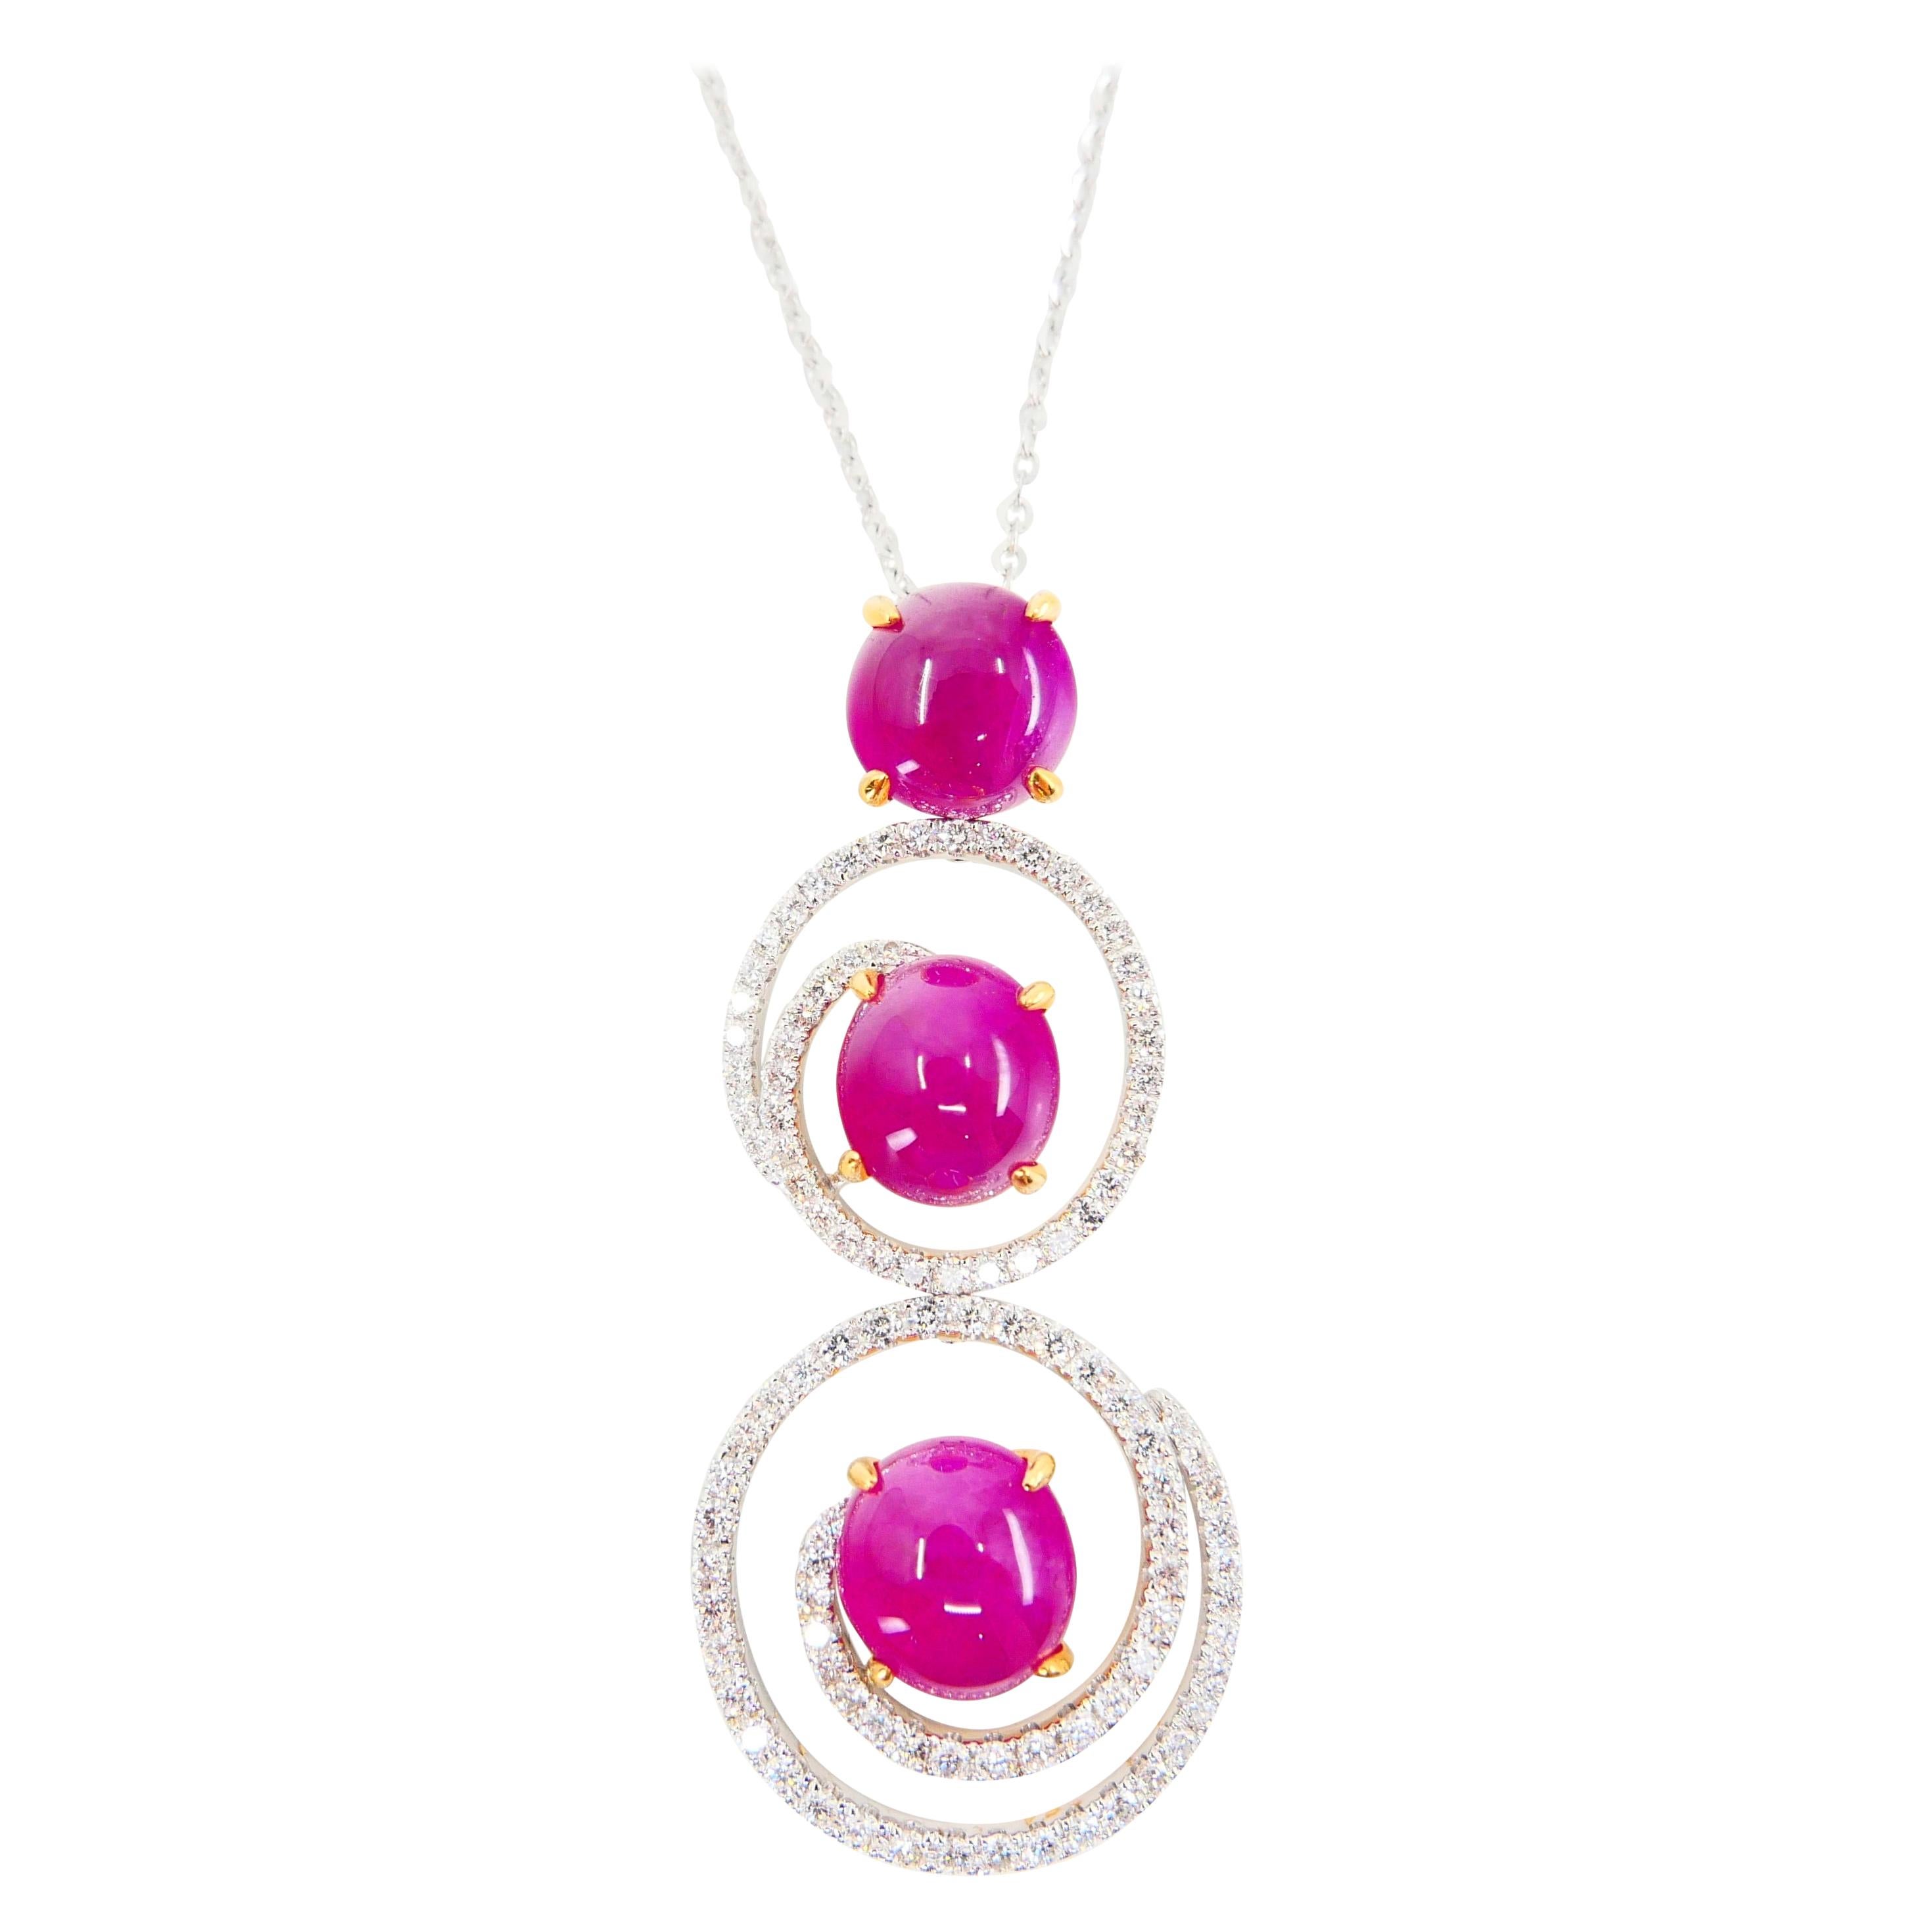 Burma Ruby 7.05 Carat and Diamond Pendant Drop Necklace, Elegant Design